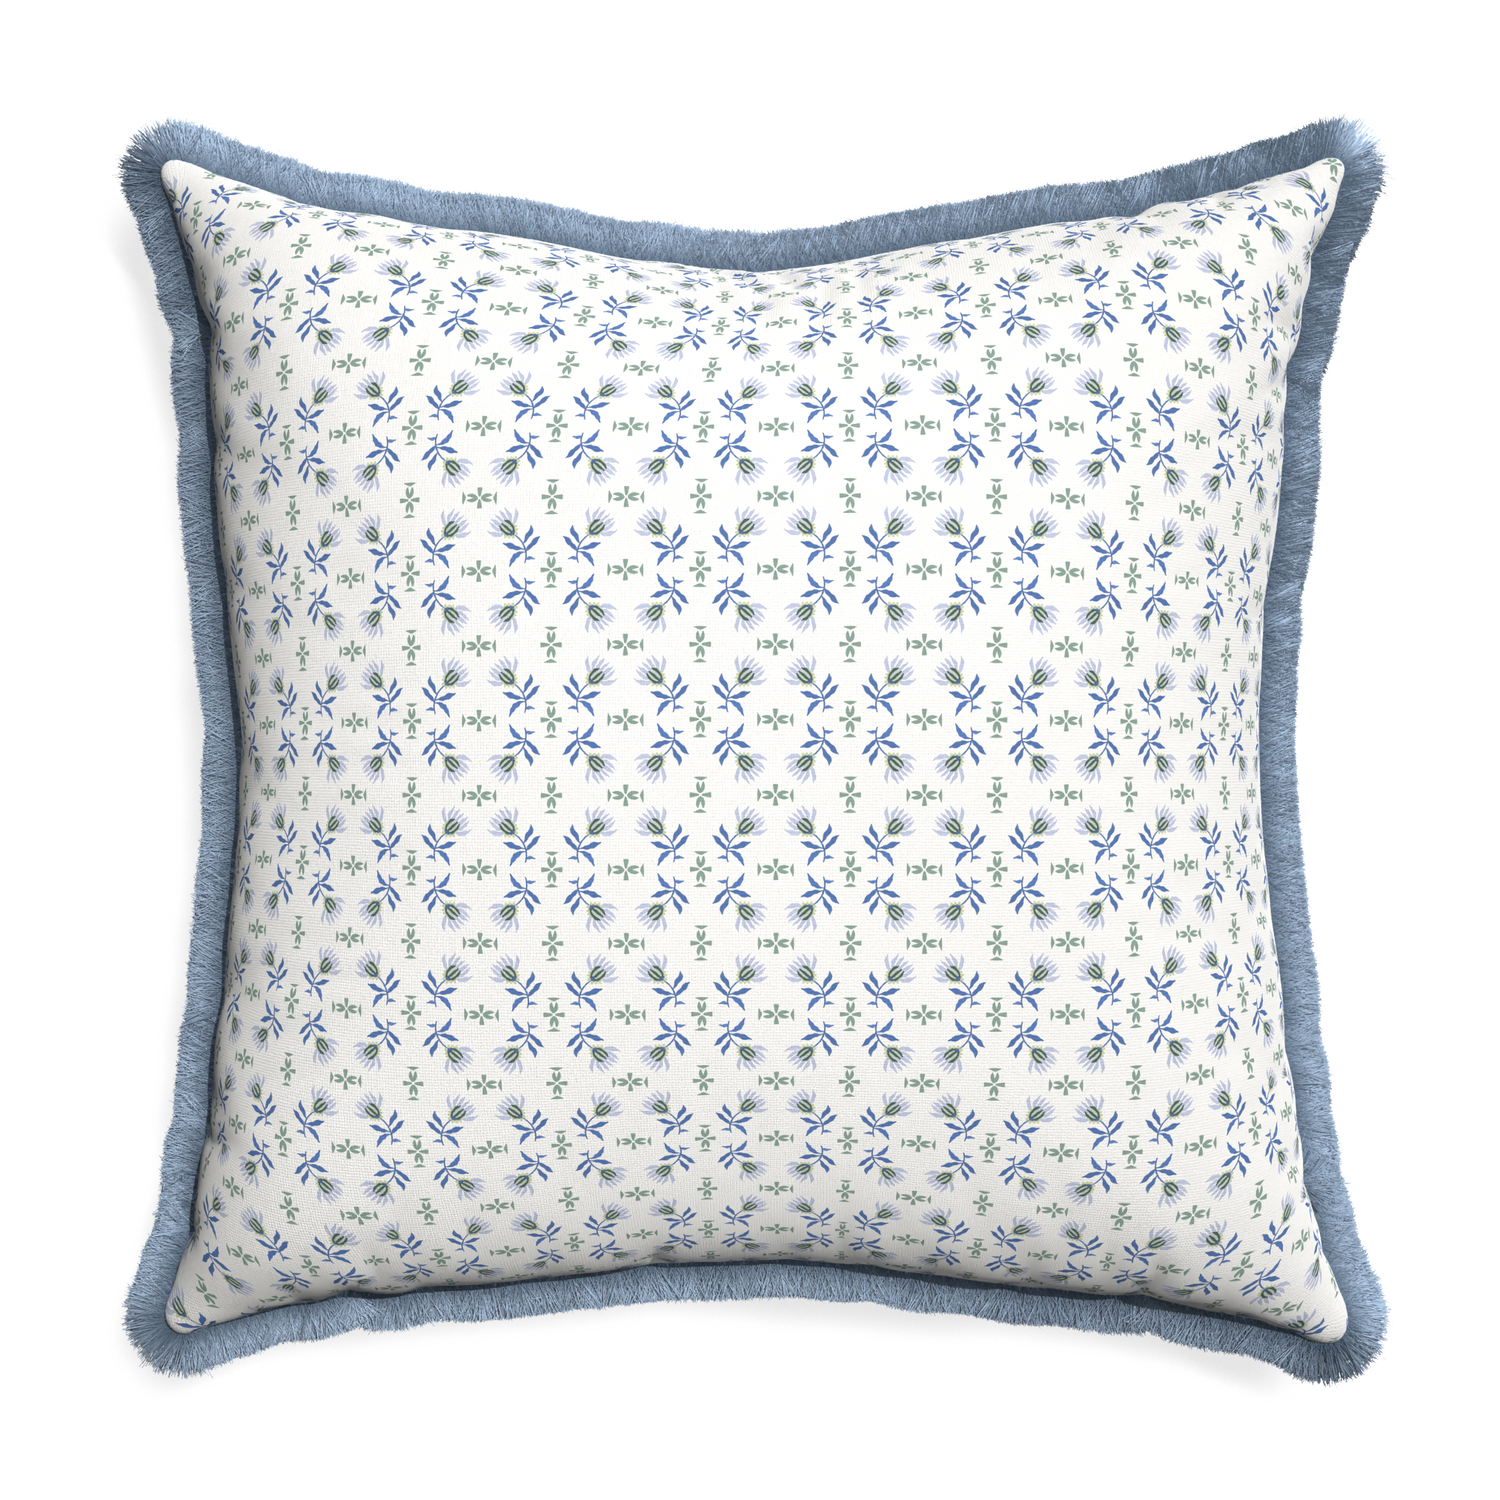 Euro-sham lee custom pillow with sky fringe on white background